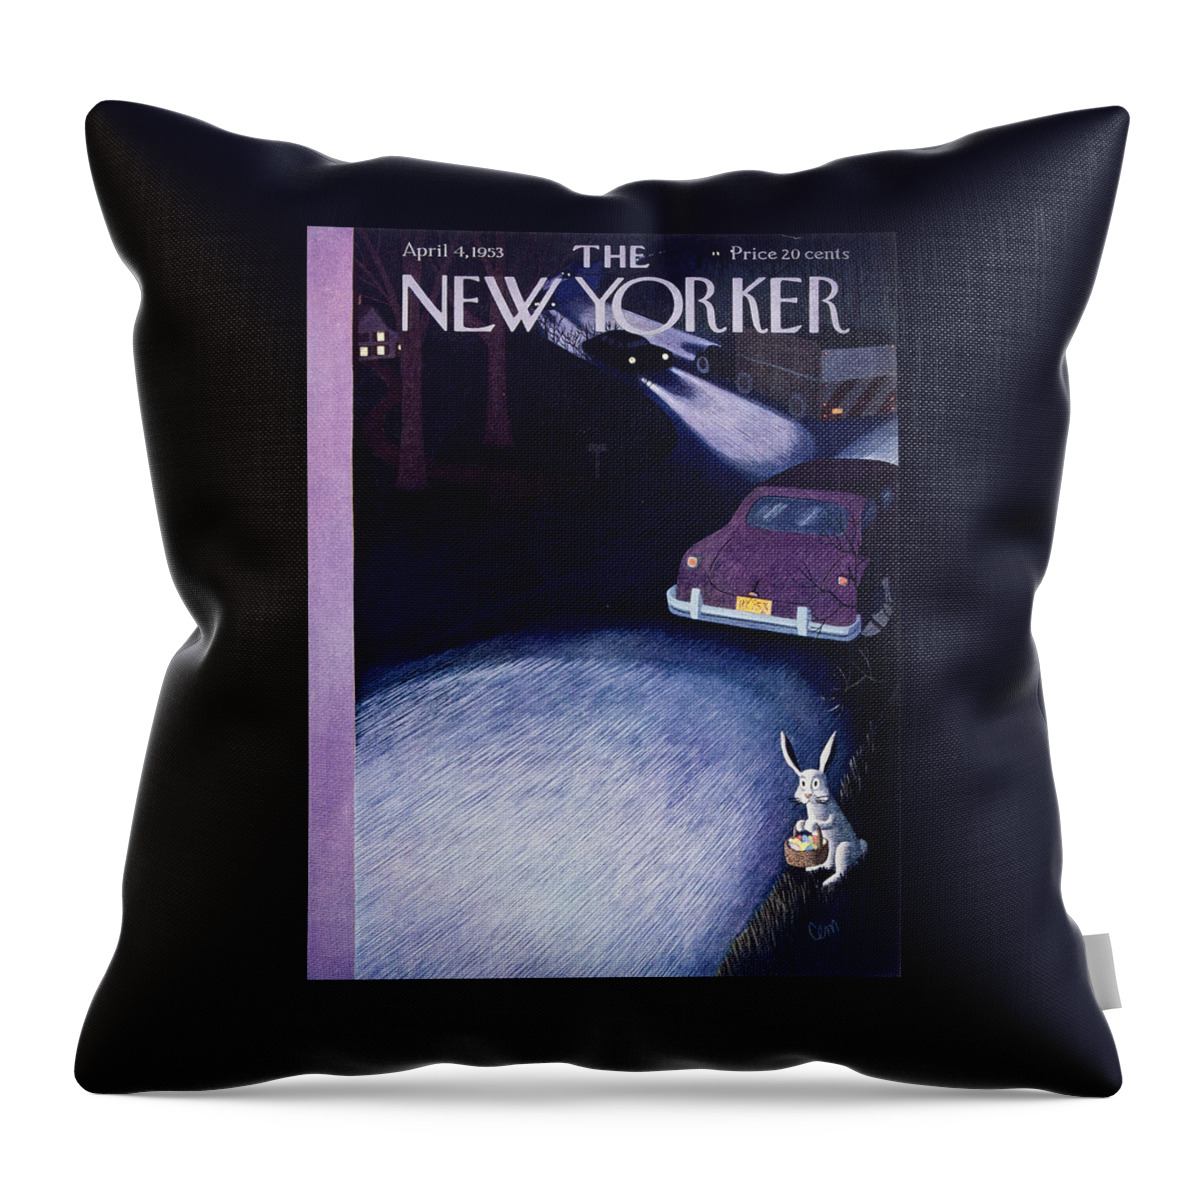 New Yorker April 4 1953 Throw Pillow